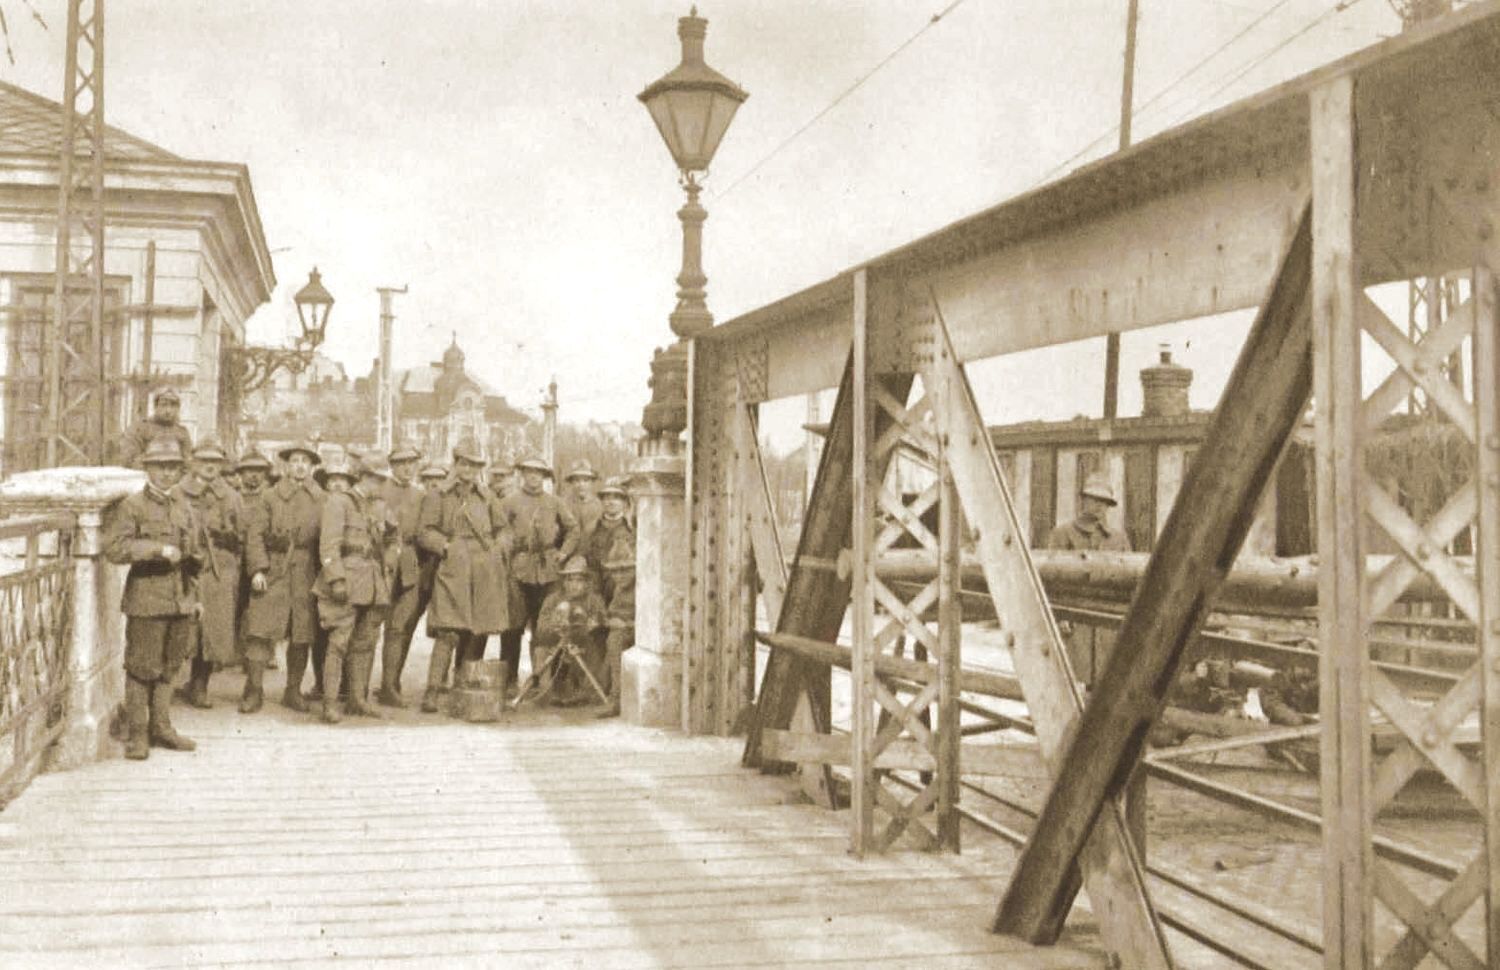 Stráž legionářů z Itálie na bratislavském mostě - Czechoslovak legions from Italy patrolling a bridge in Bratislava.